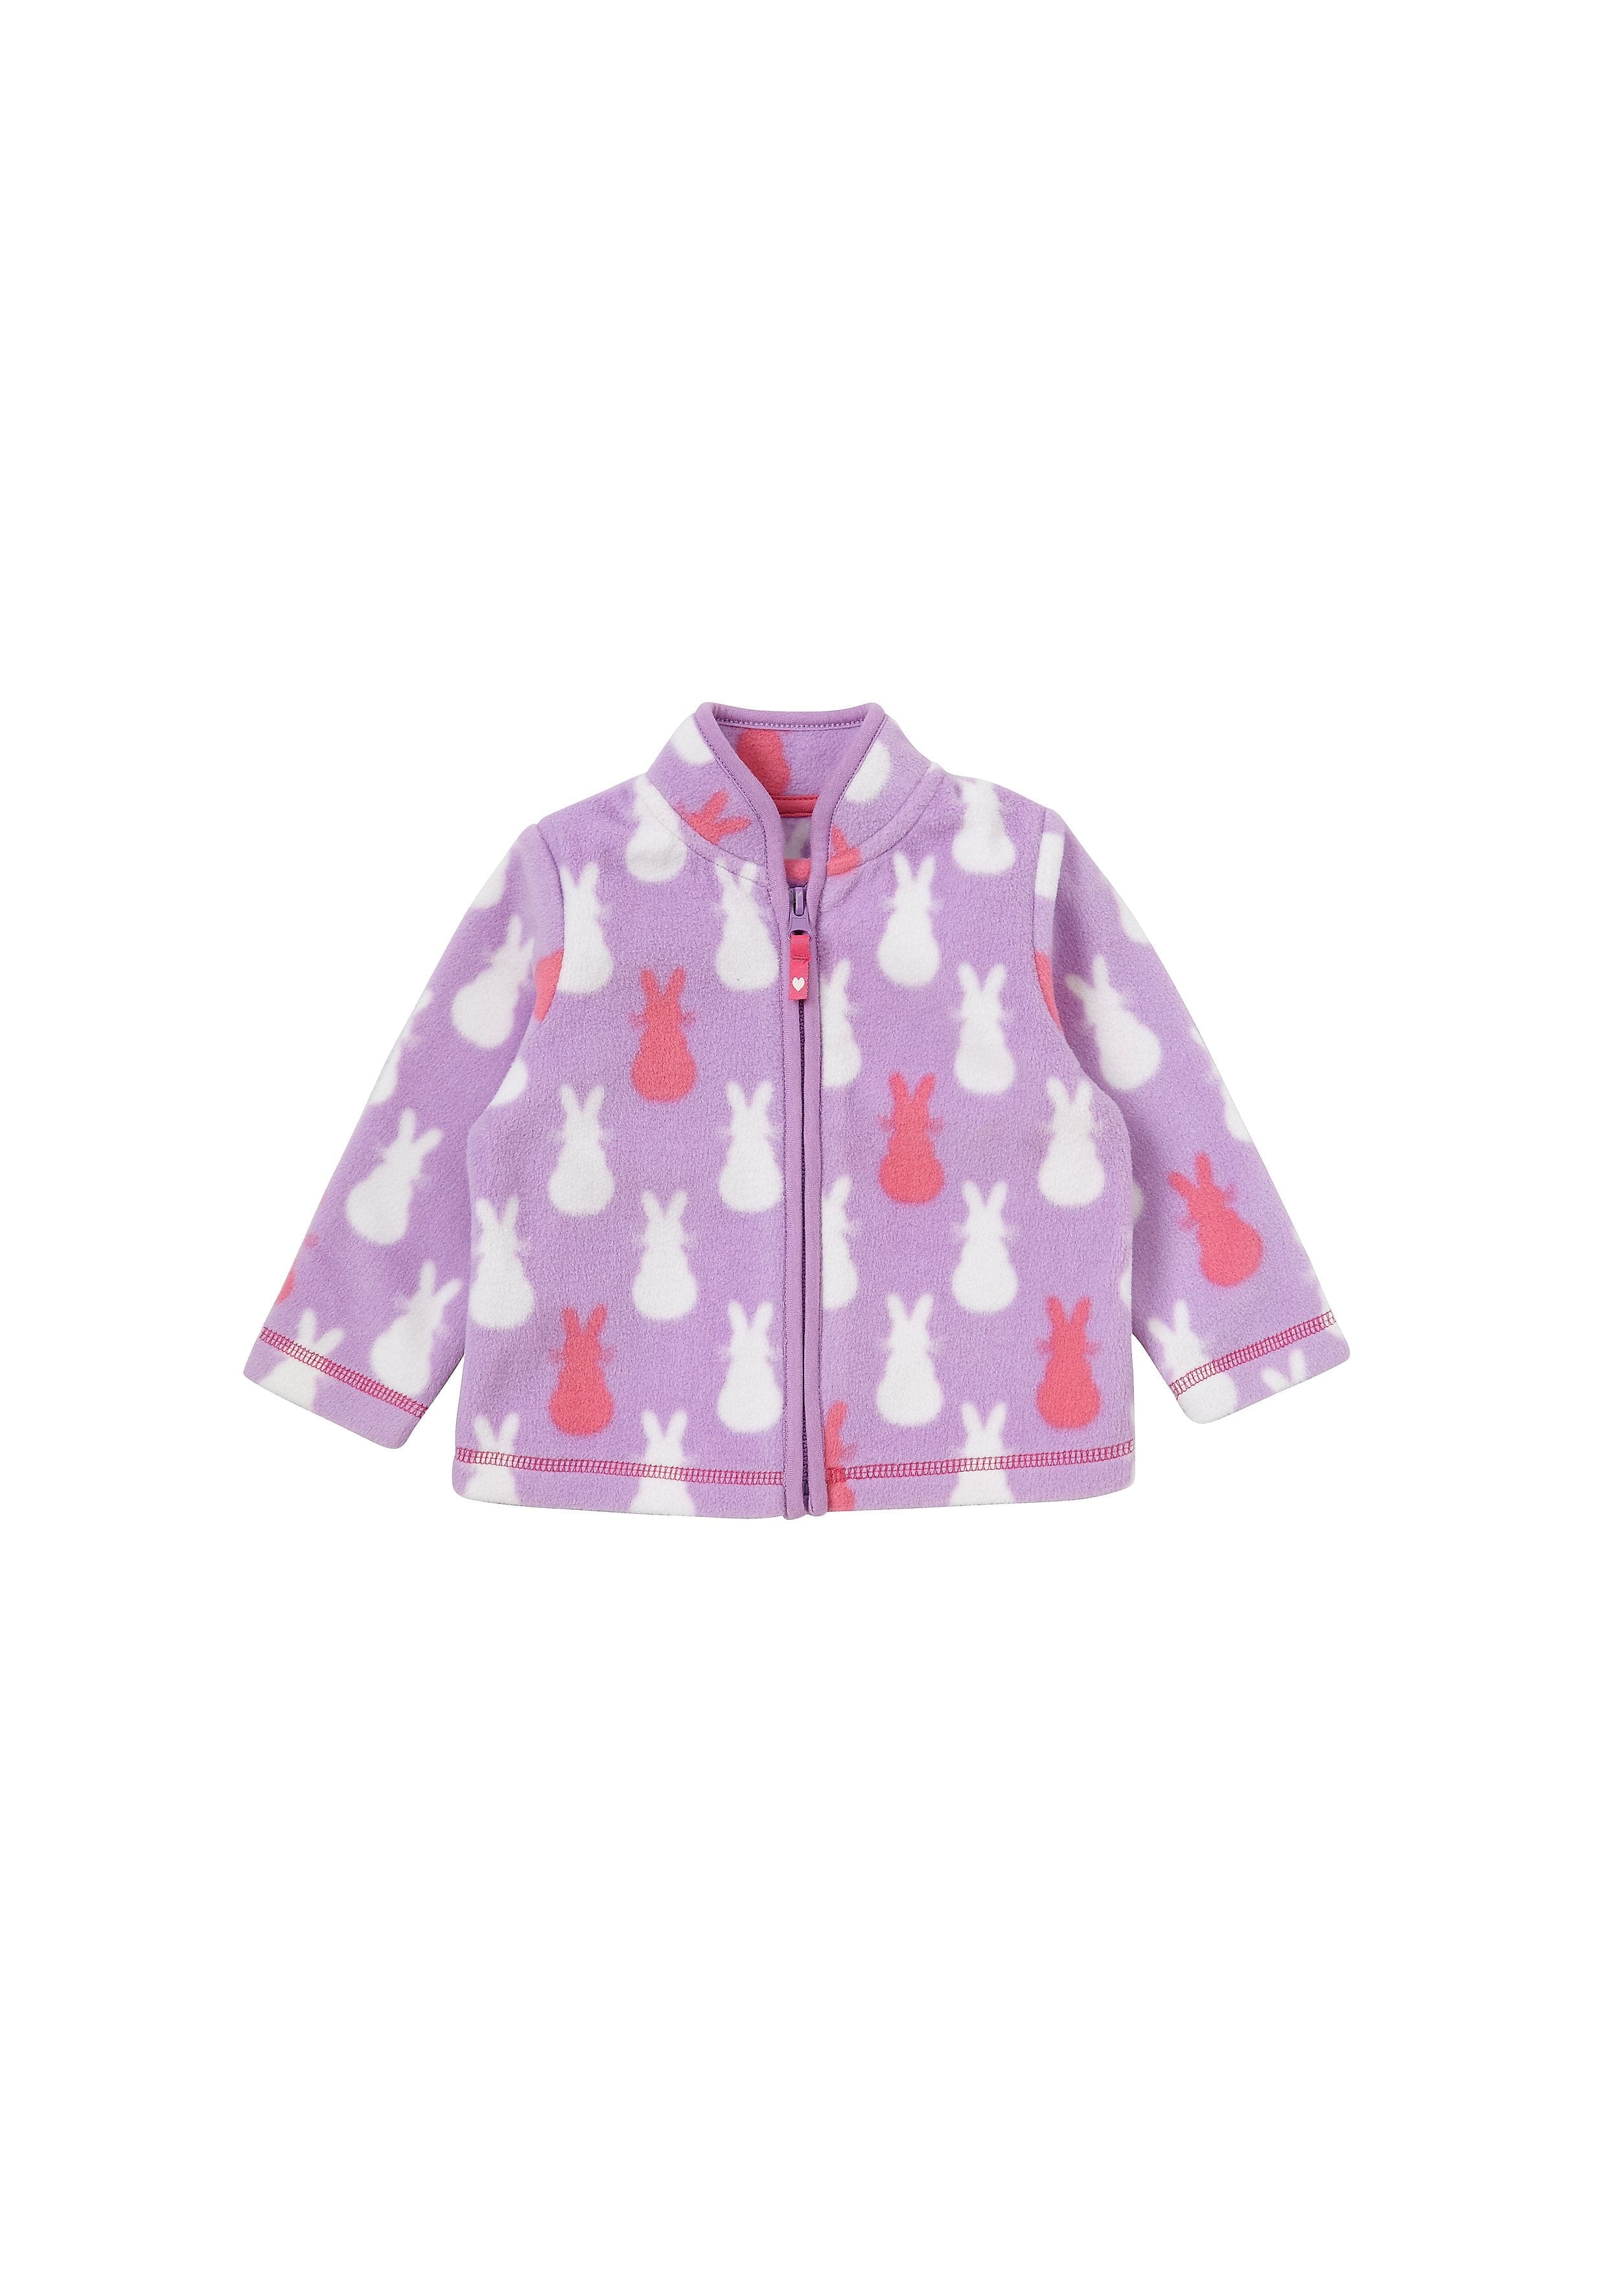 Mothercare | Girls Full Sleeves Fleece Jacket Bunny Design - Purple 0